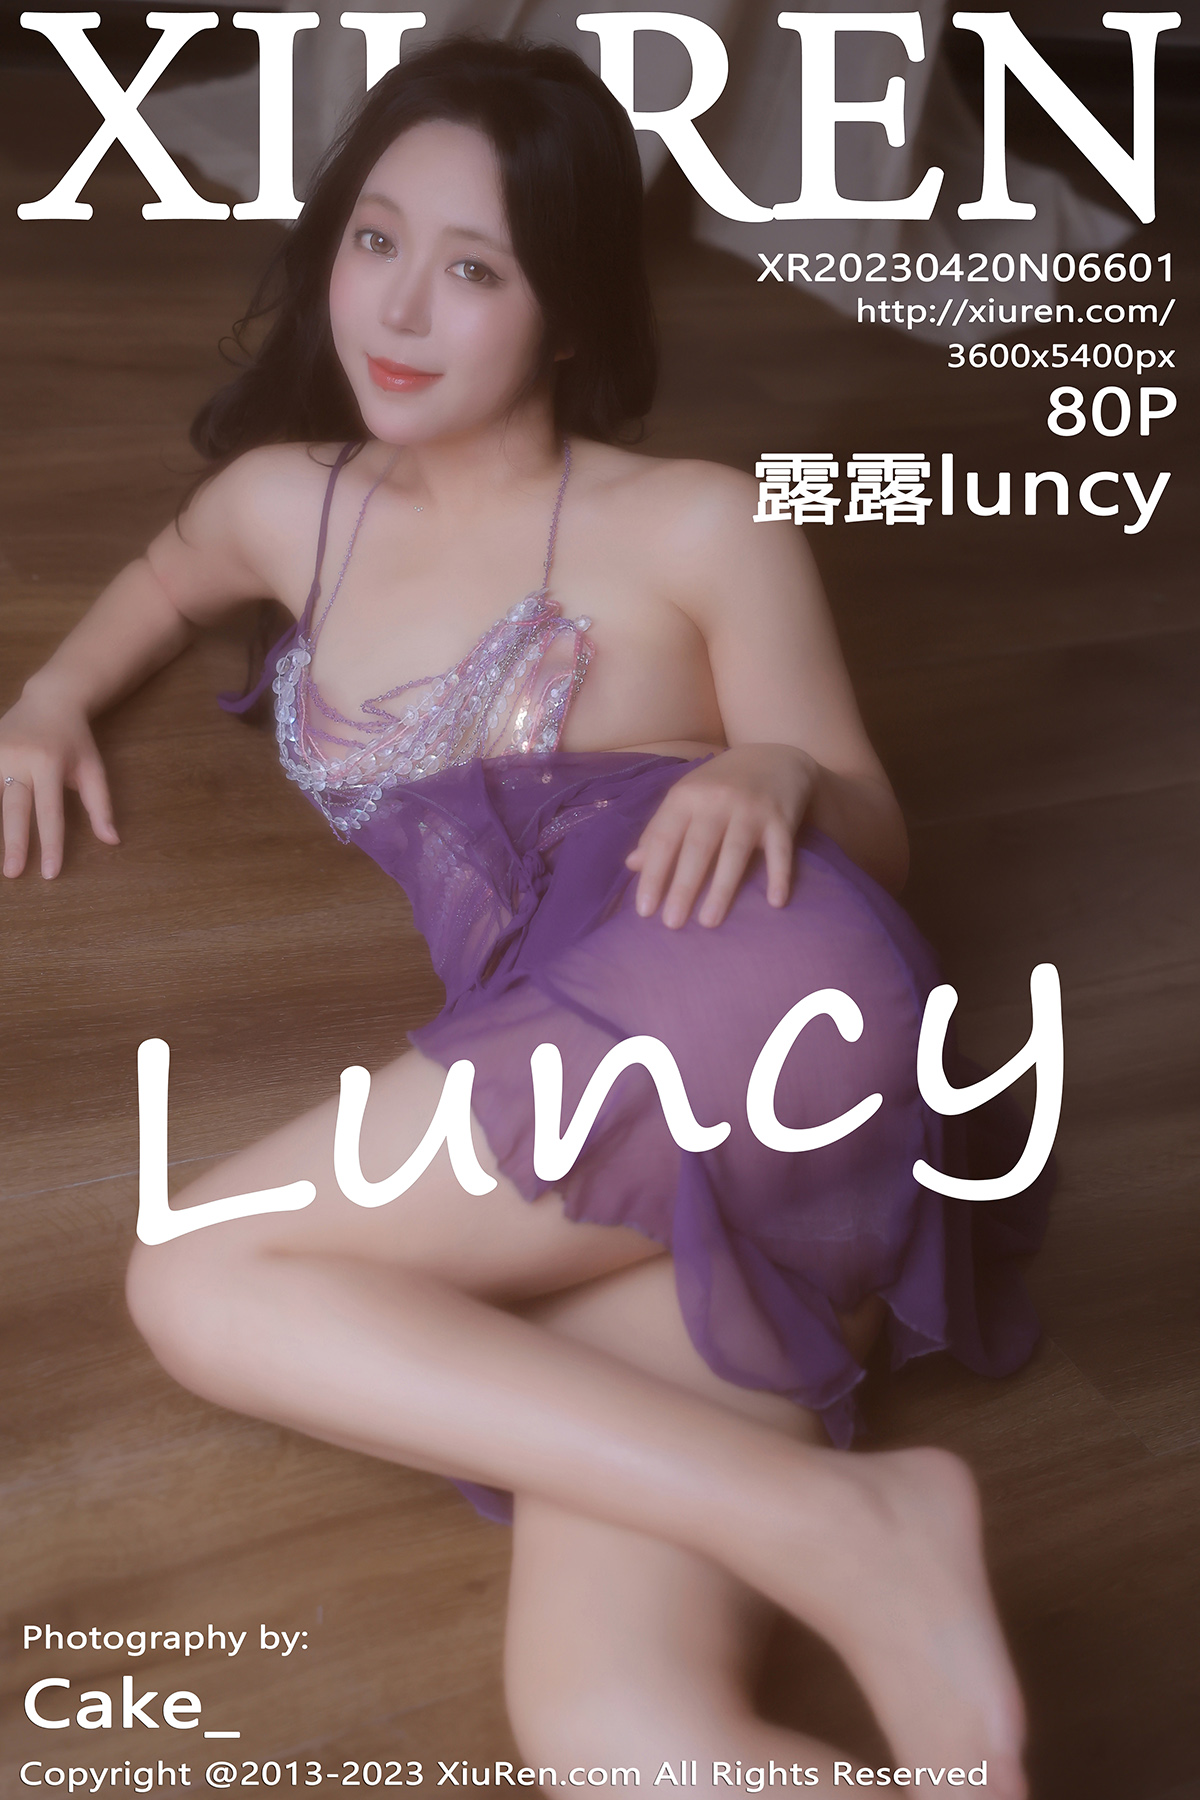 秀人 [XIUREN] 2023.04.20 露露luncy